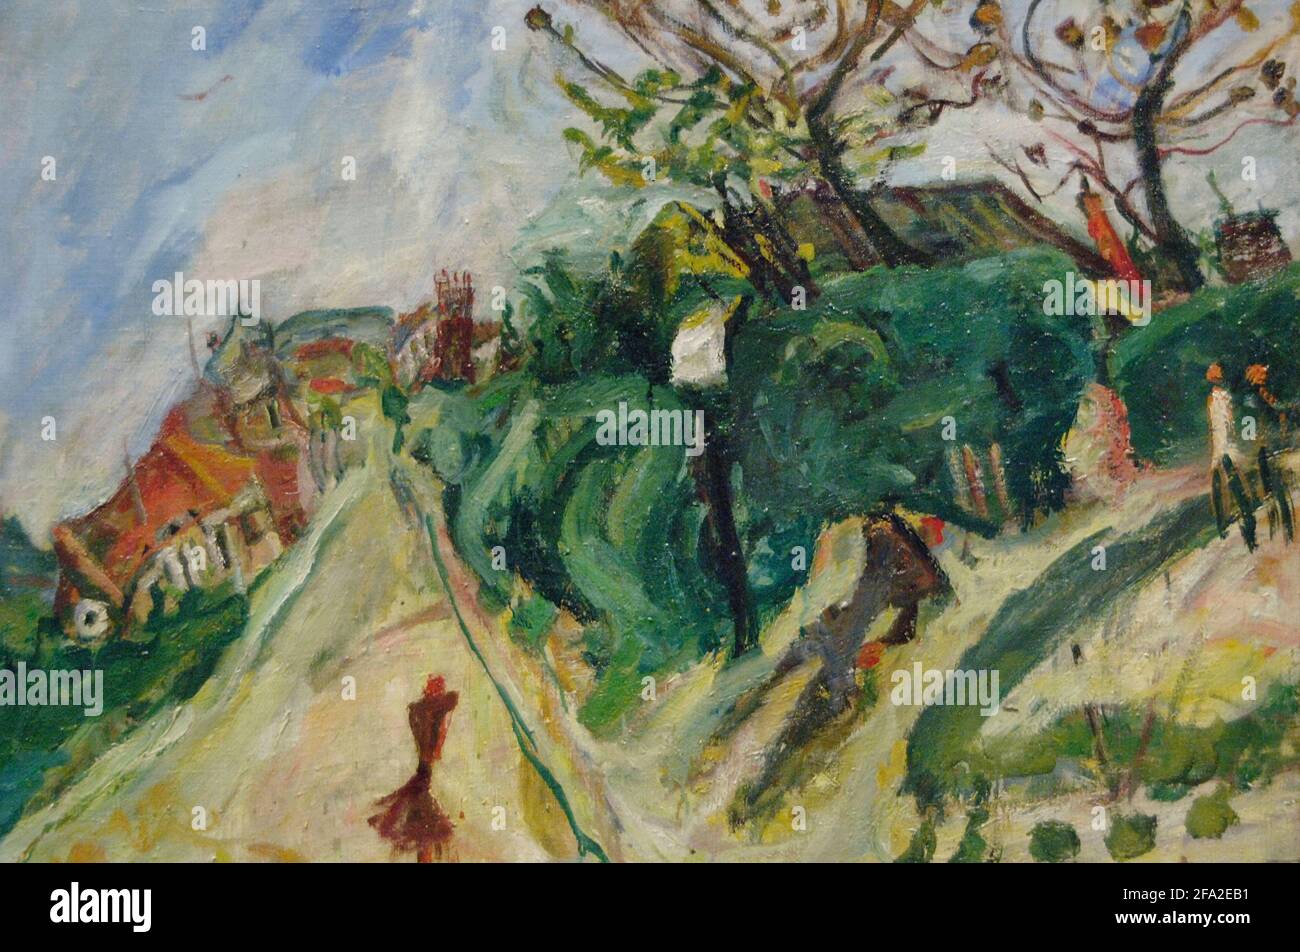 Chaim Soutine (1893-1943). French painter of Belarussian origin. Landscape with Figures, ca. 1918-1919. Oil on canvas (60 x 80 cm). Orangerie Museum. Paris. France. Stock Photo